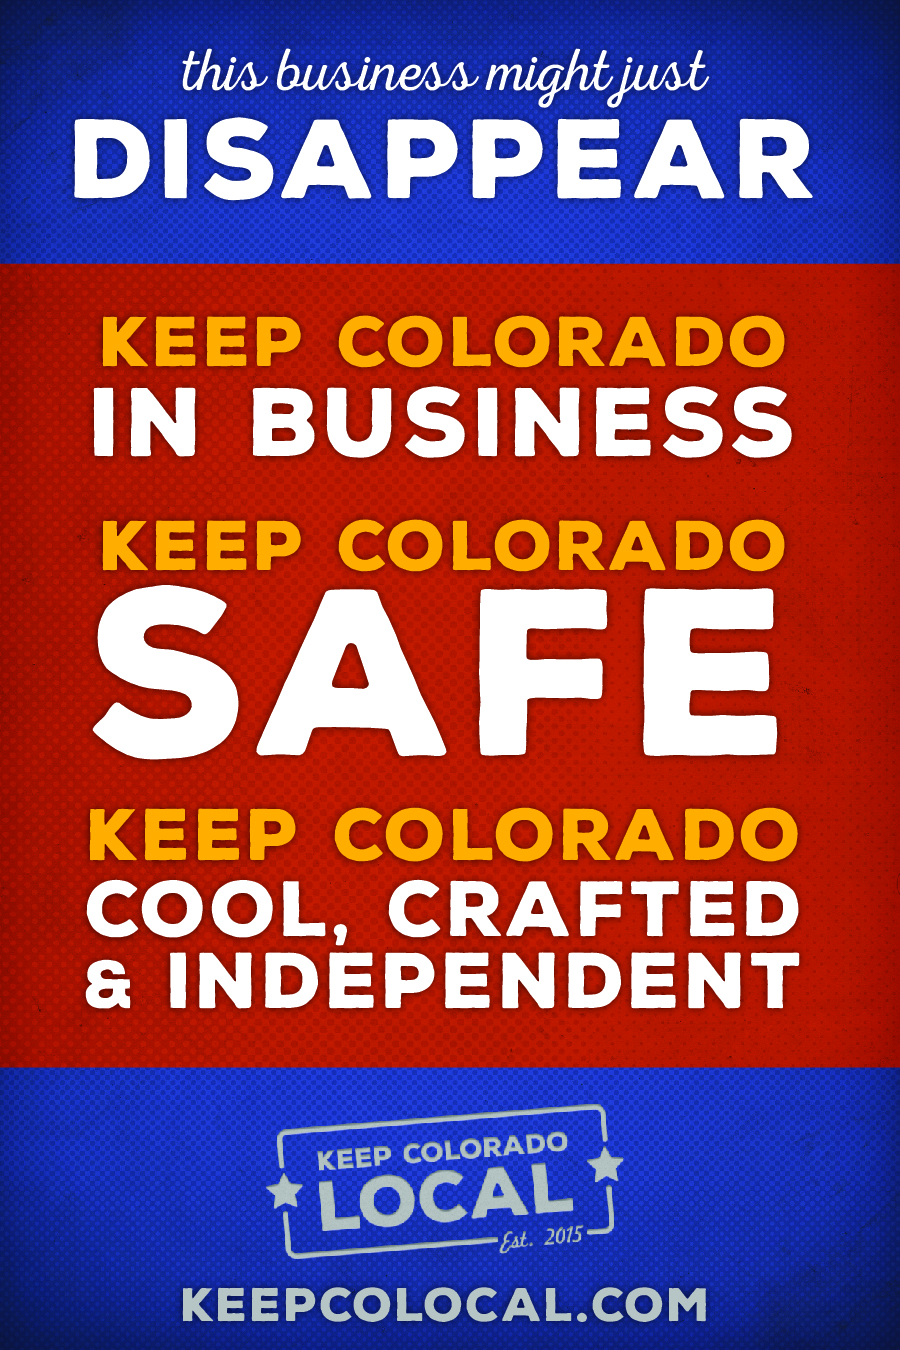 Keep Colorado Local!